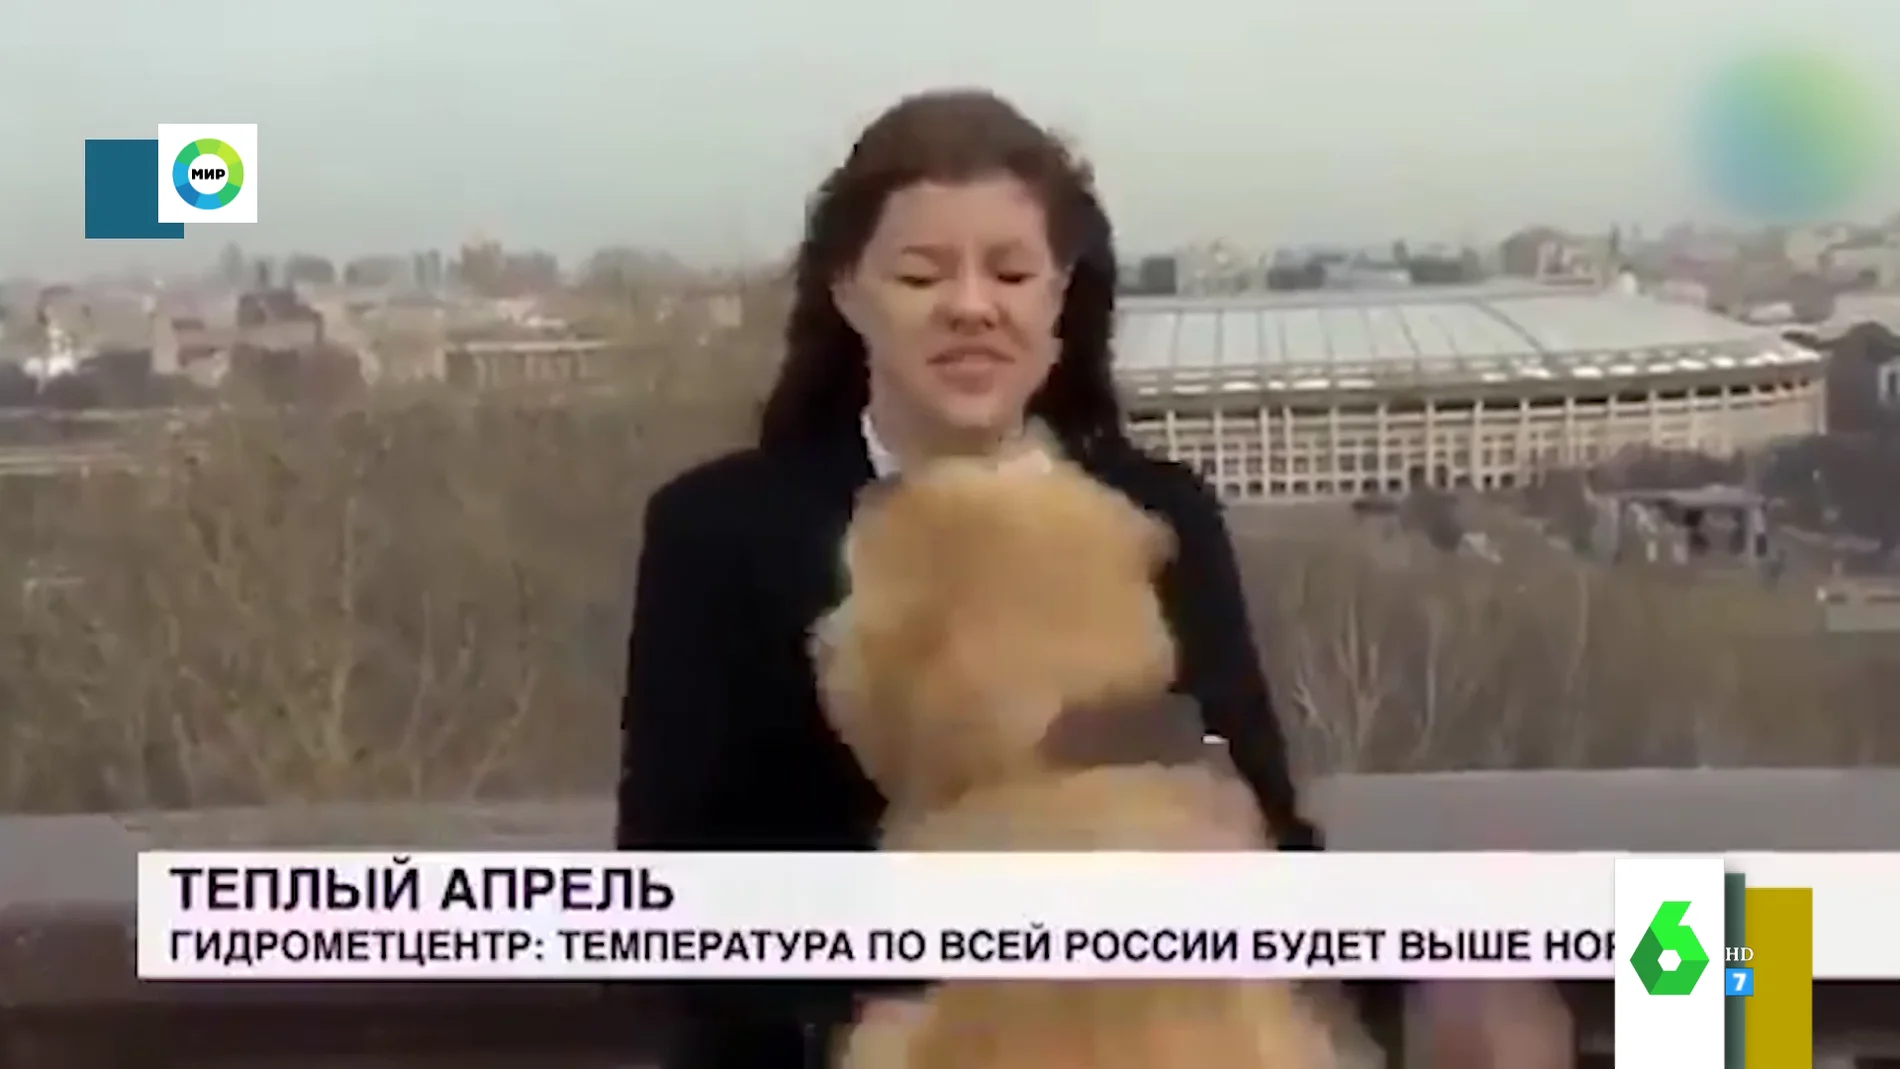 Un perro se cuela en un directo para robar el micrófono a la reportera